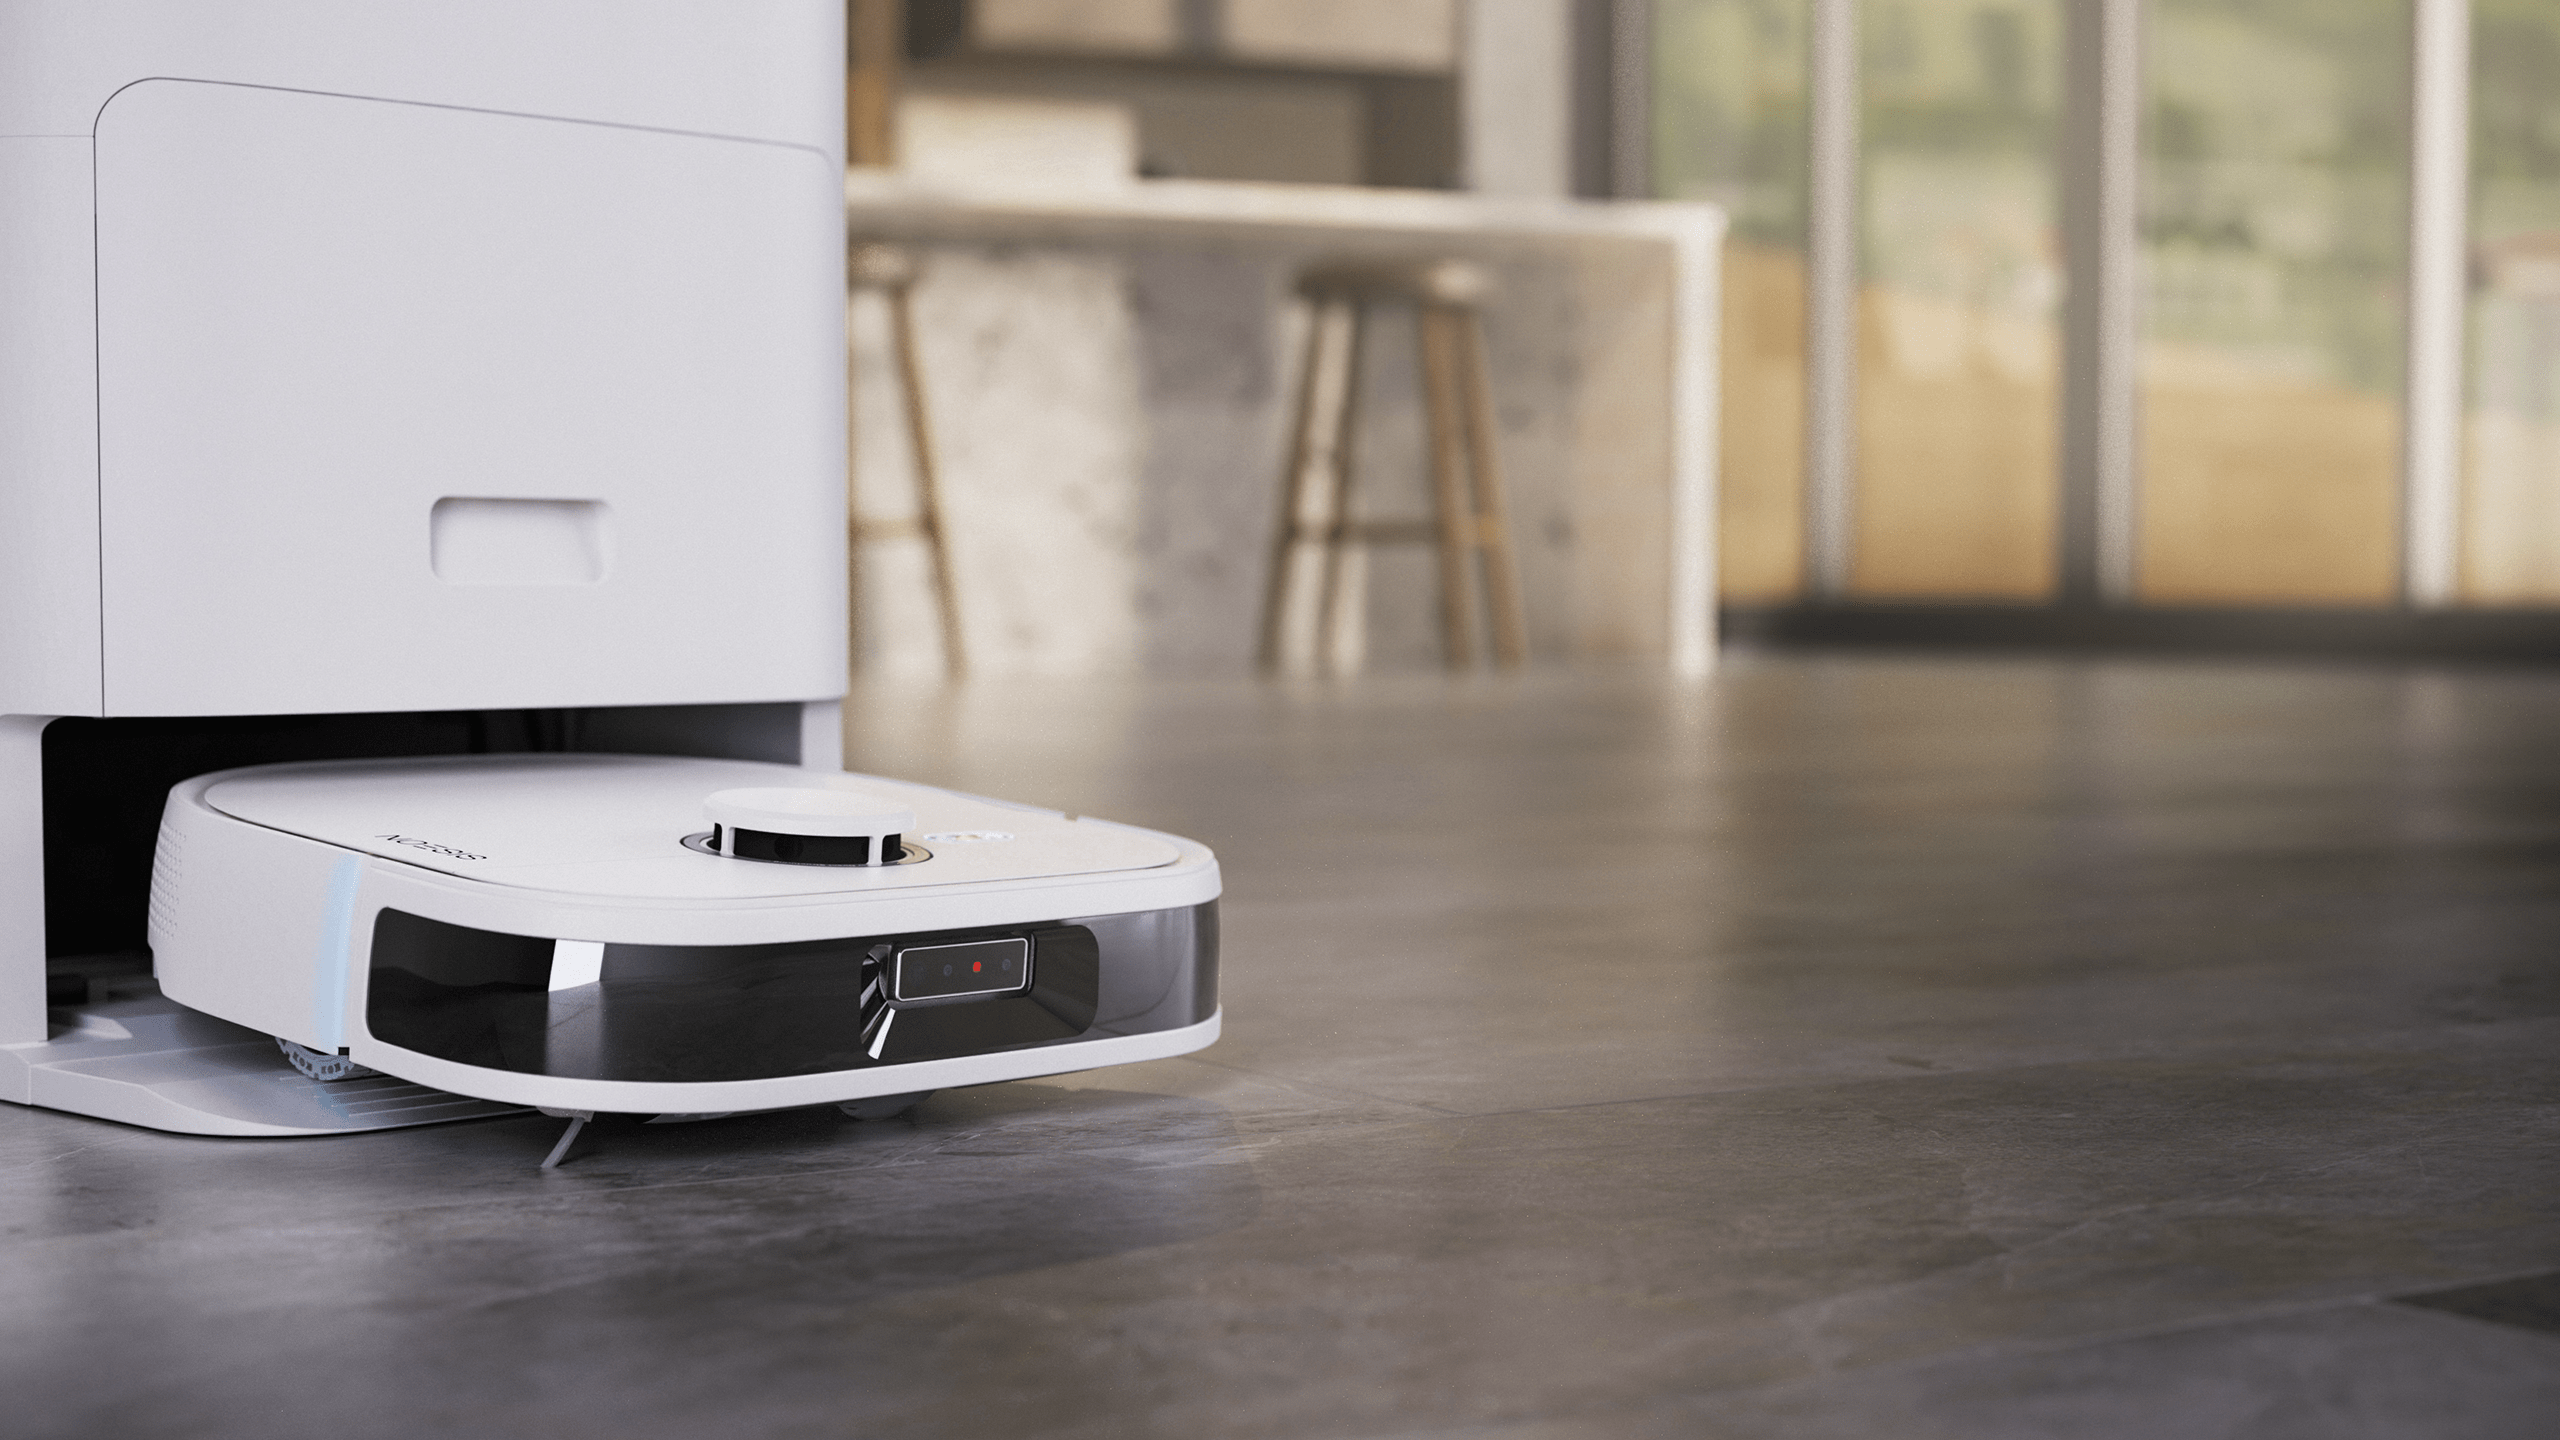 Robot Noesis y estación base en el suelo de una casa